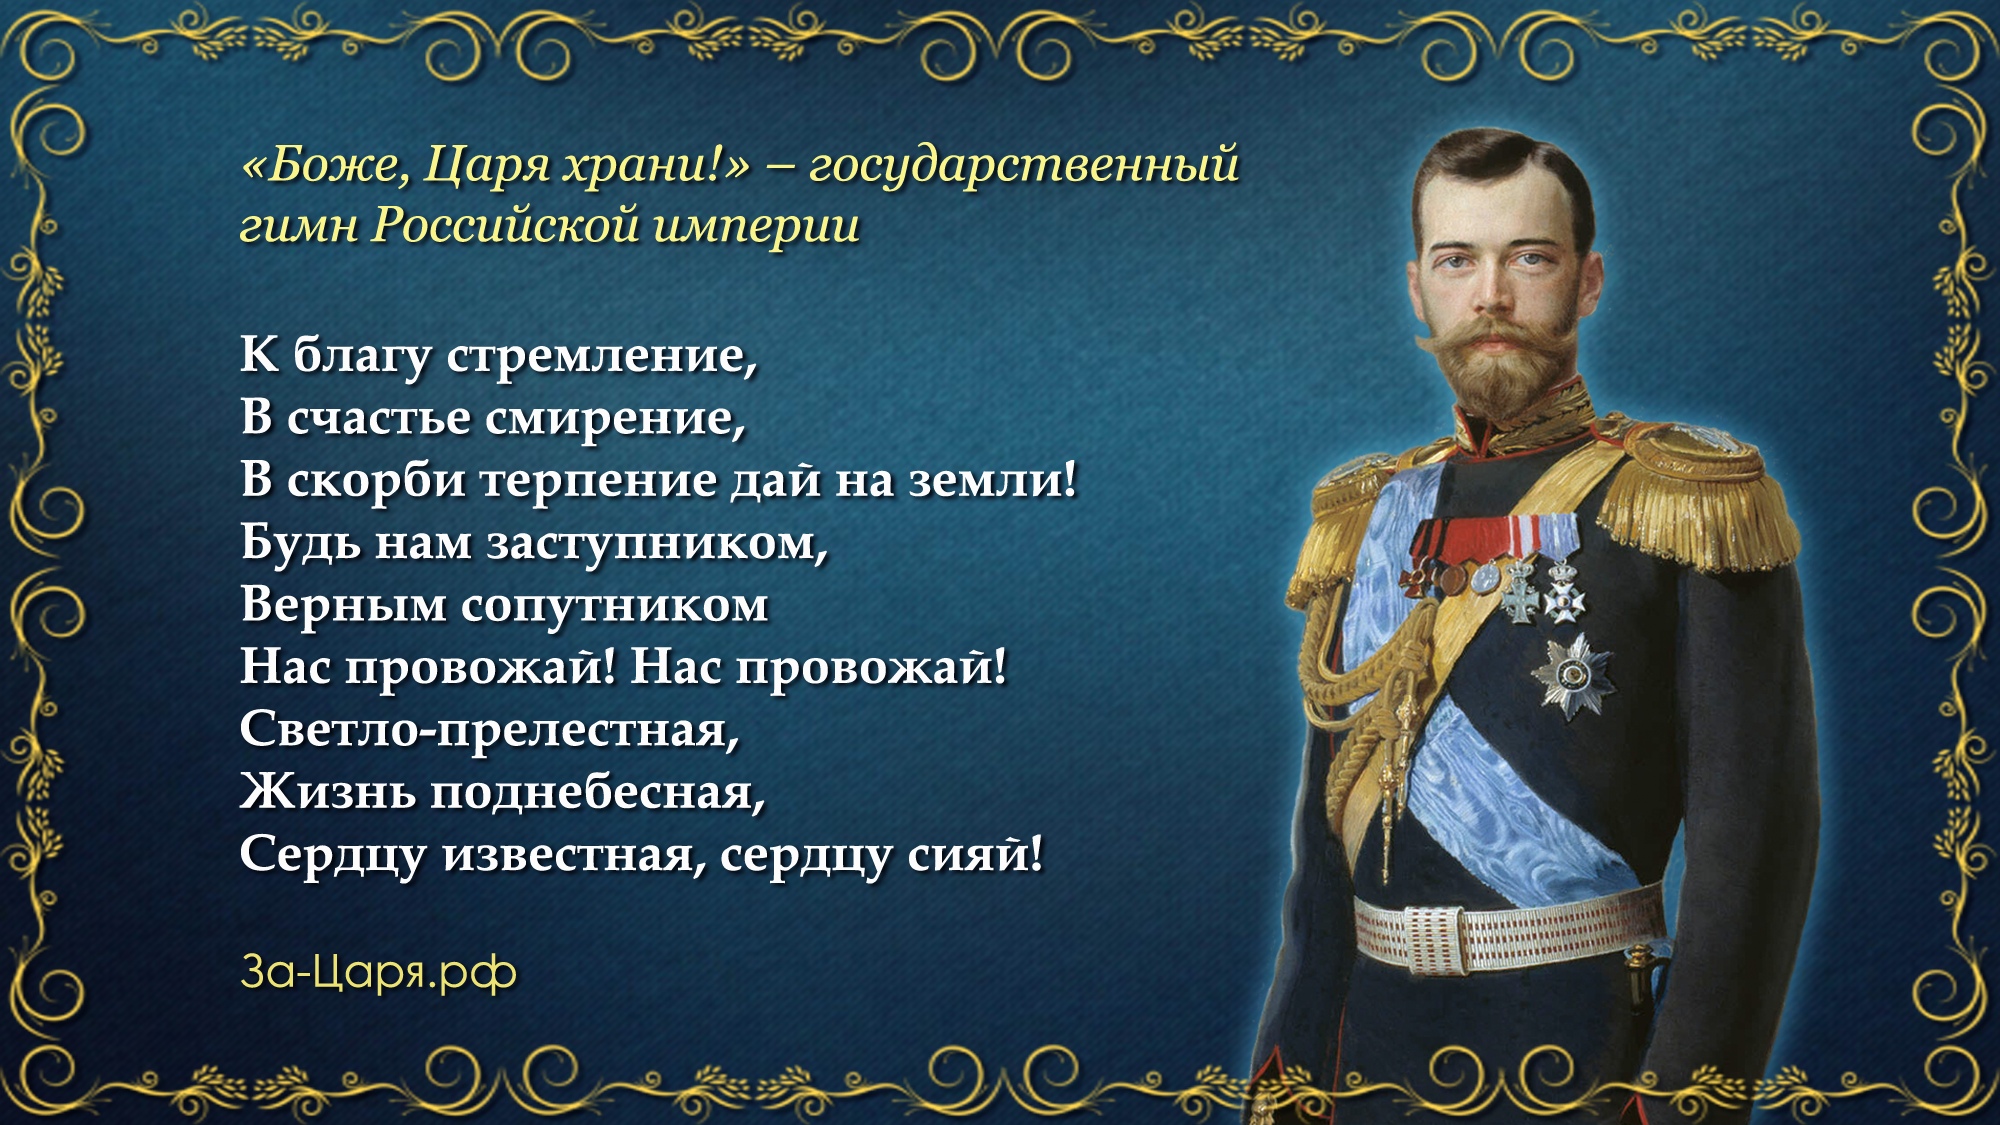 Время появления российской империи